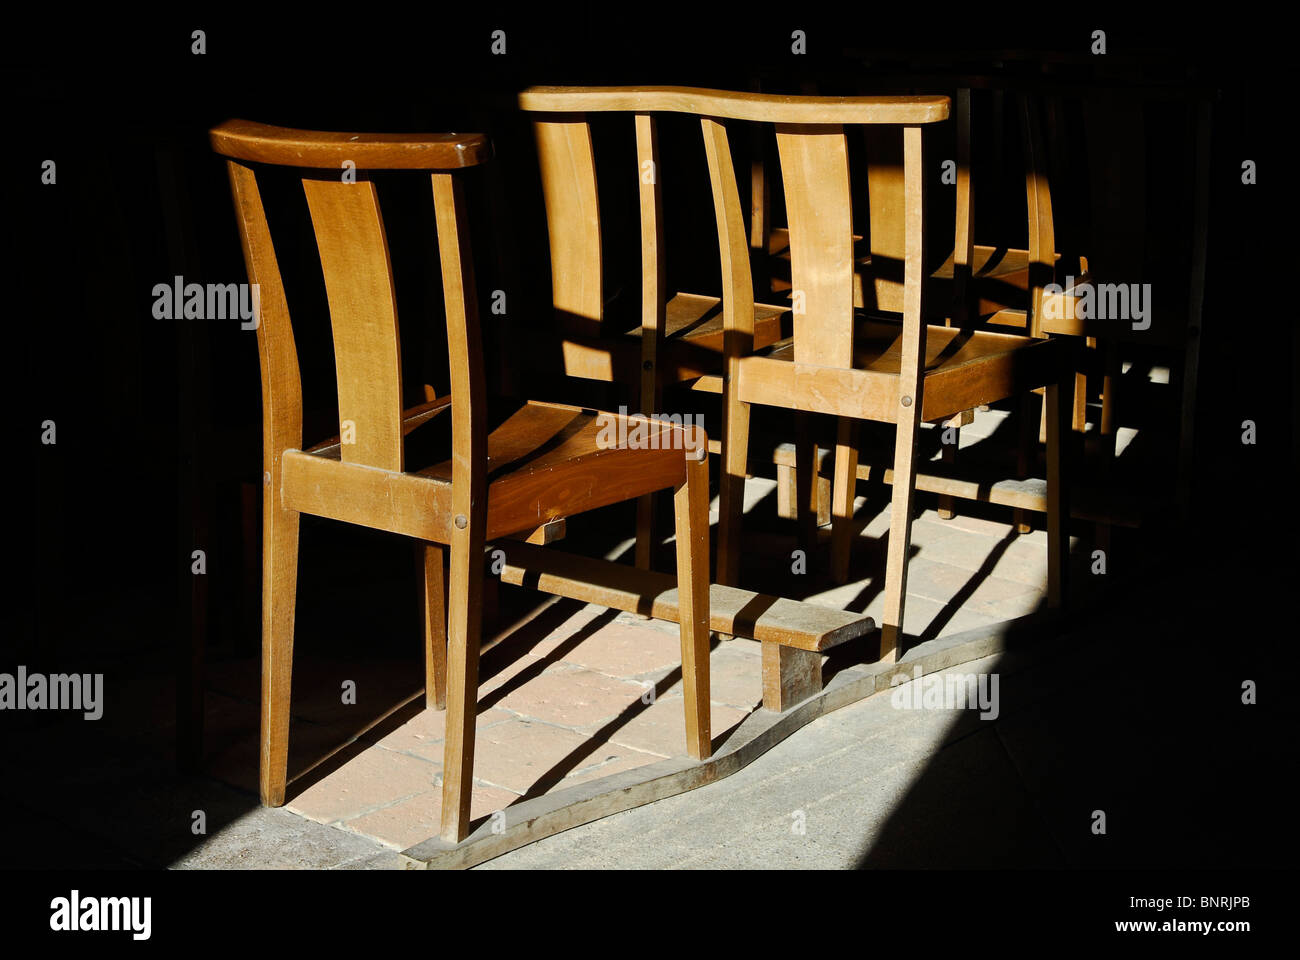 Sunlit church chairs, Pommiers-en-Forez, Loire département, France Stock Photo